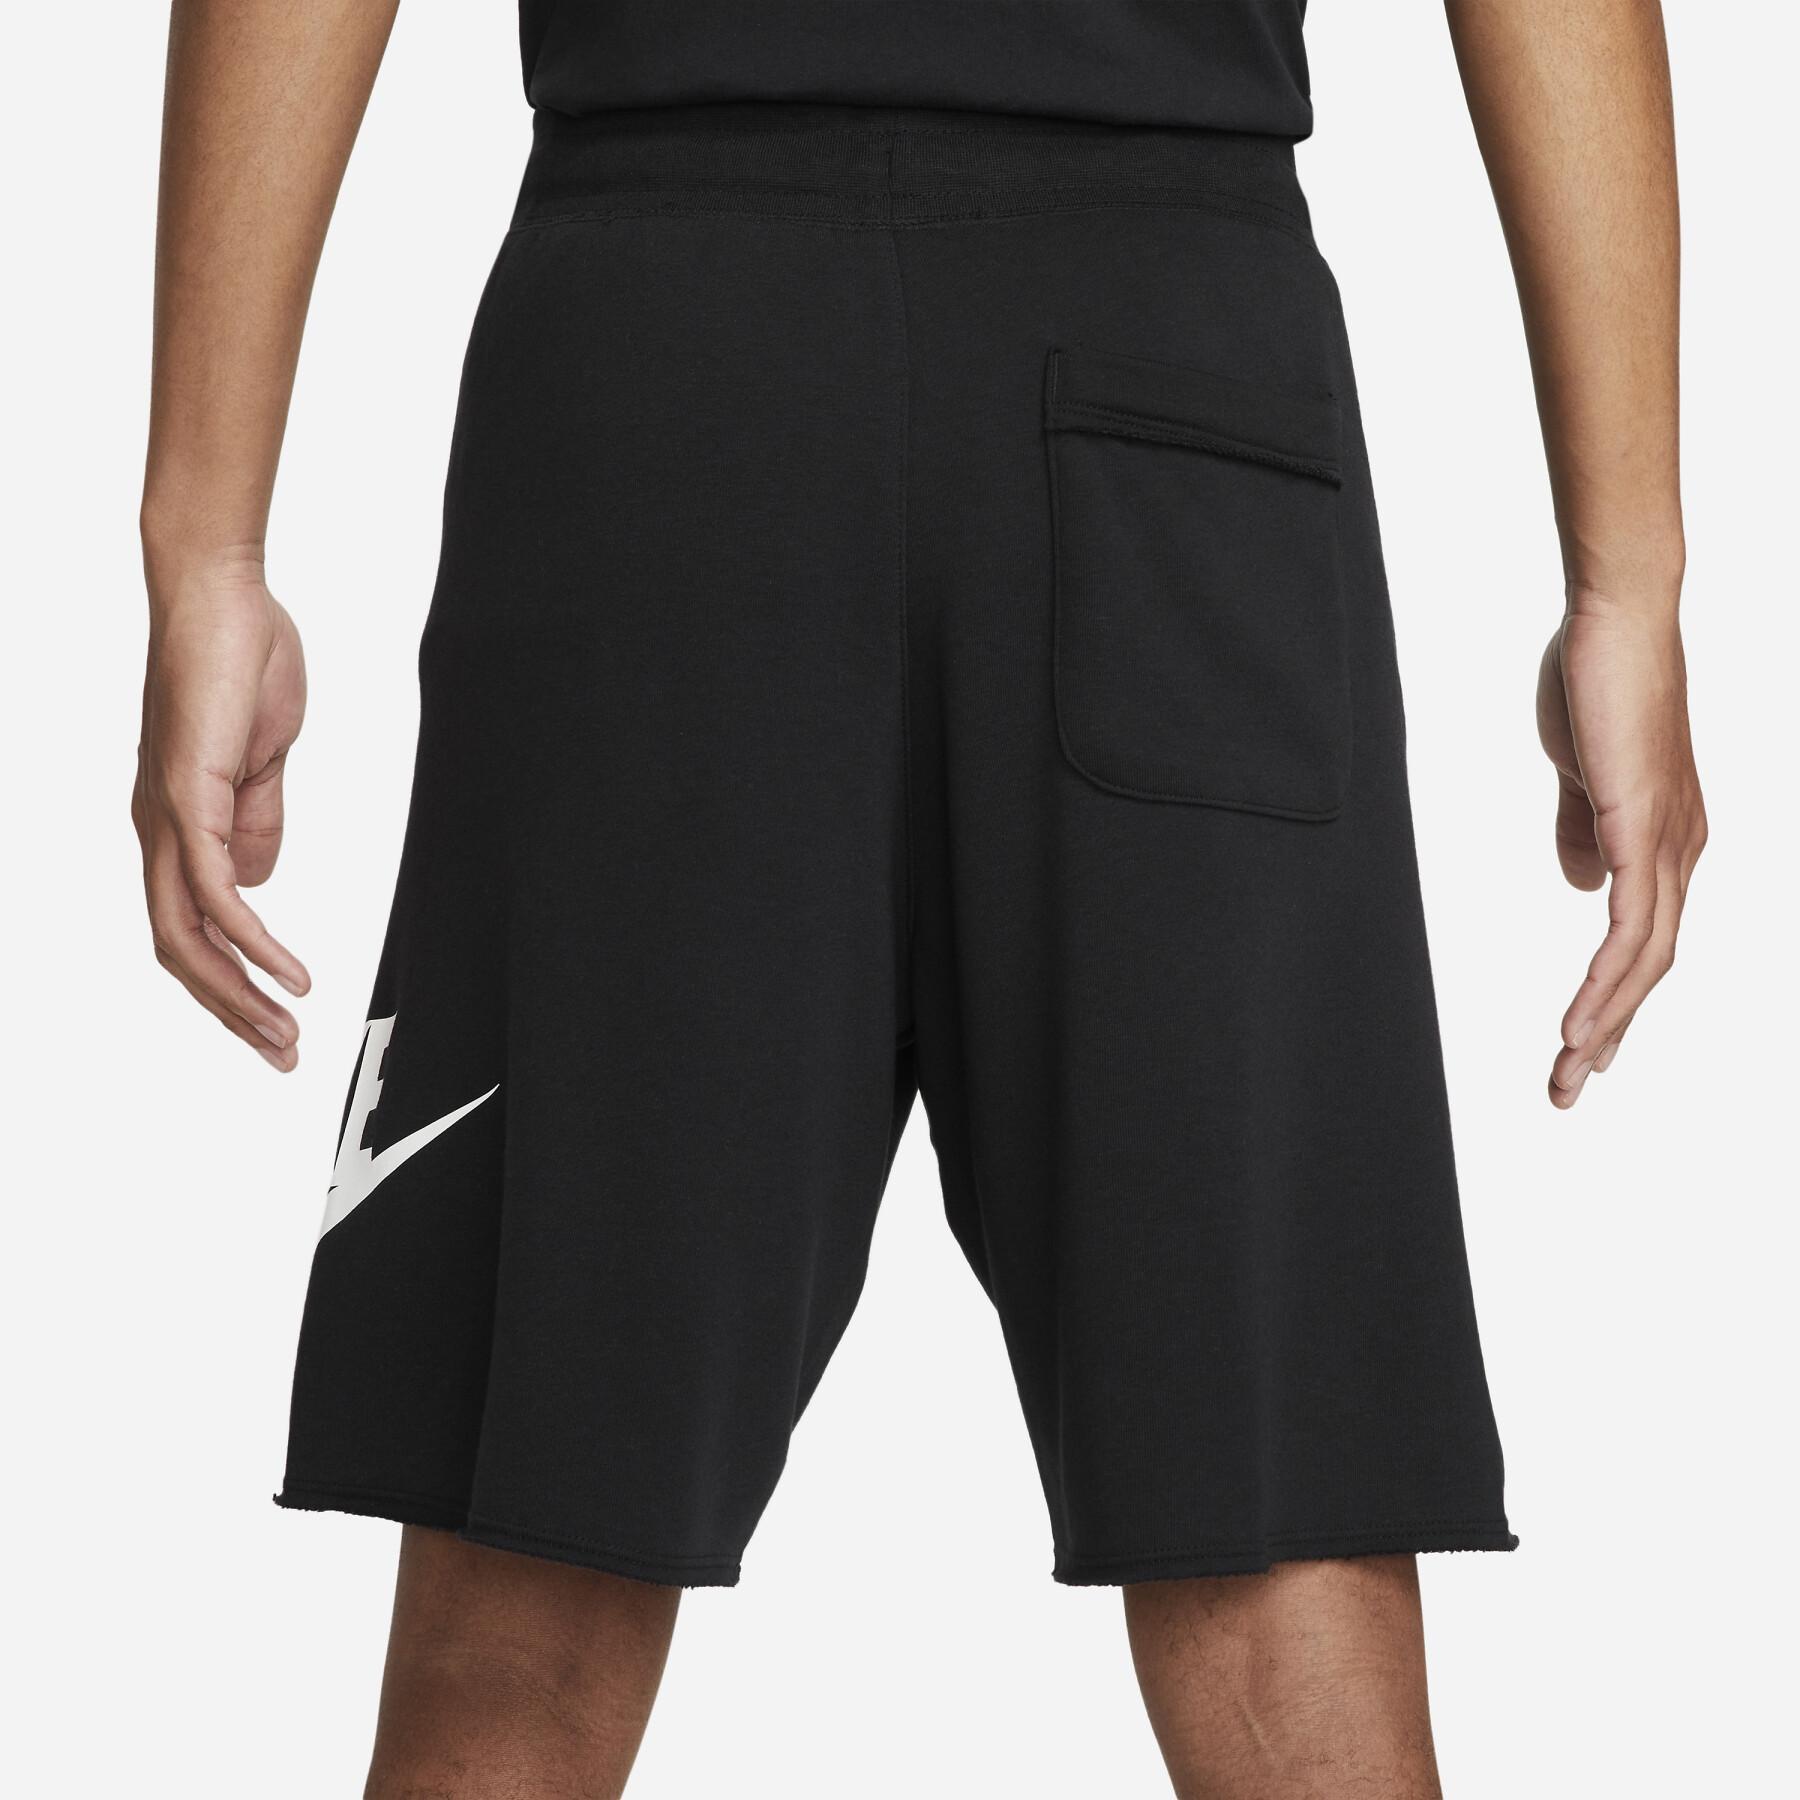 Krótka Nike Club Essentials Alumni